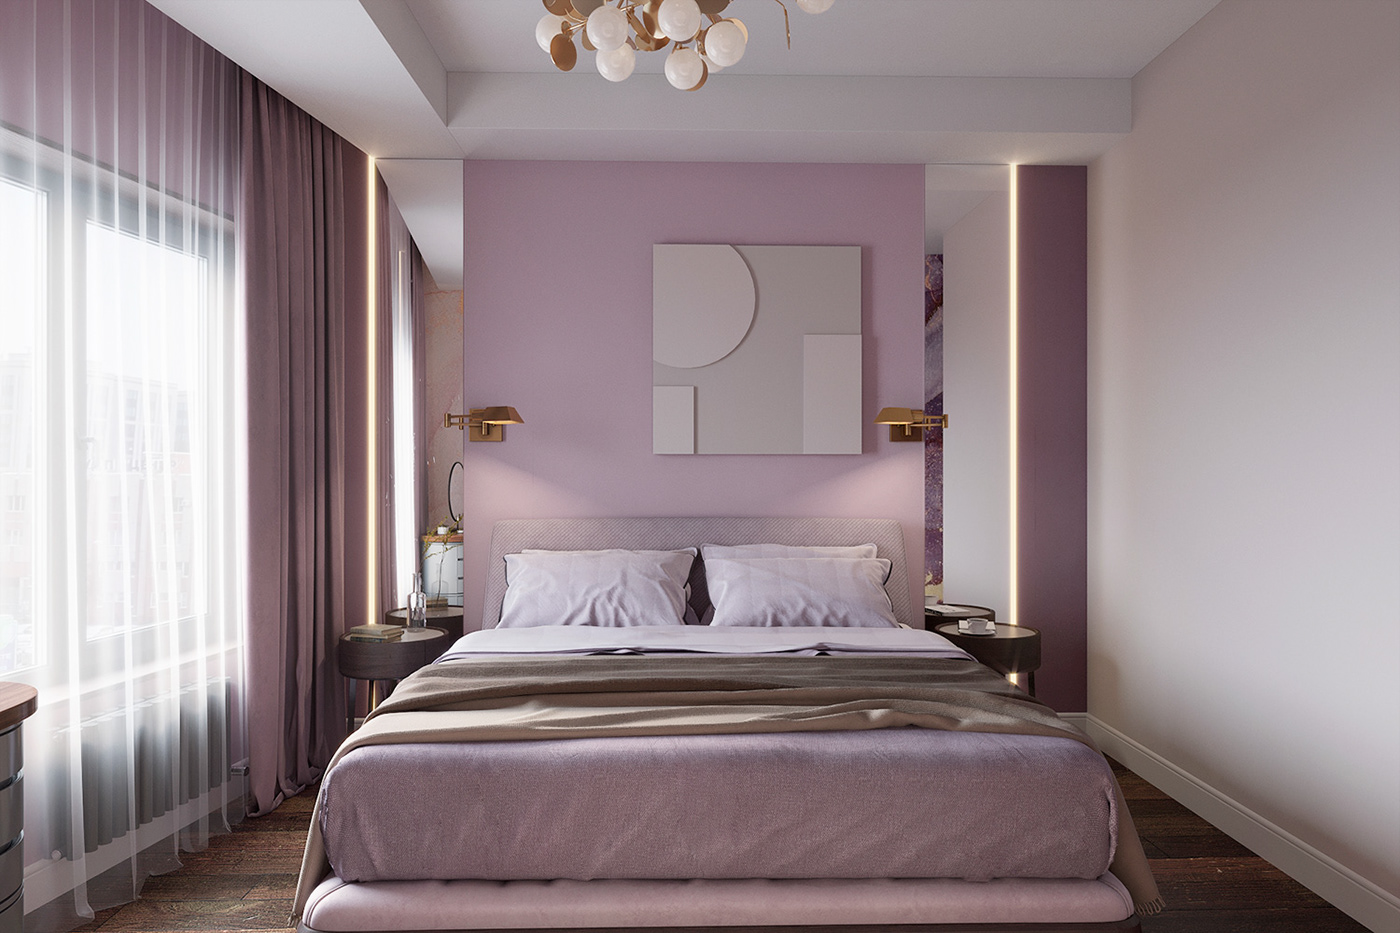 Phòng ngủ màu tím khoai môn ngọt ngào là không gian lý tưởng và ấm cúng